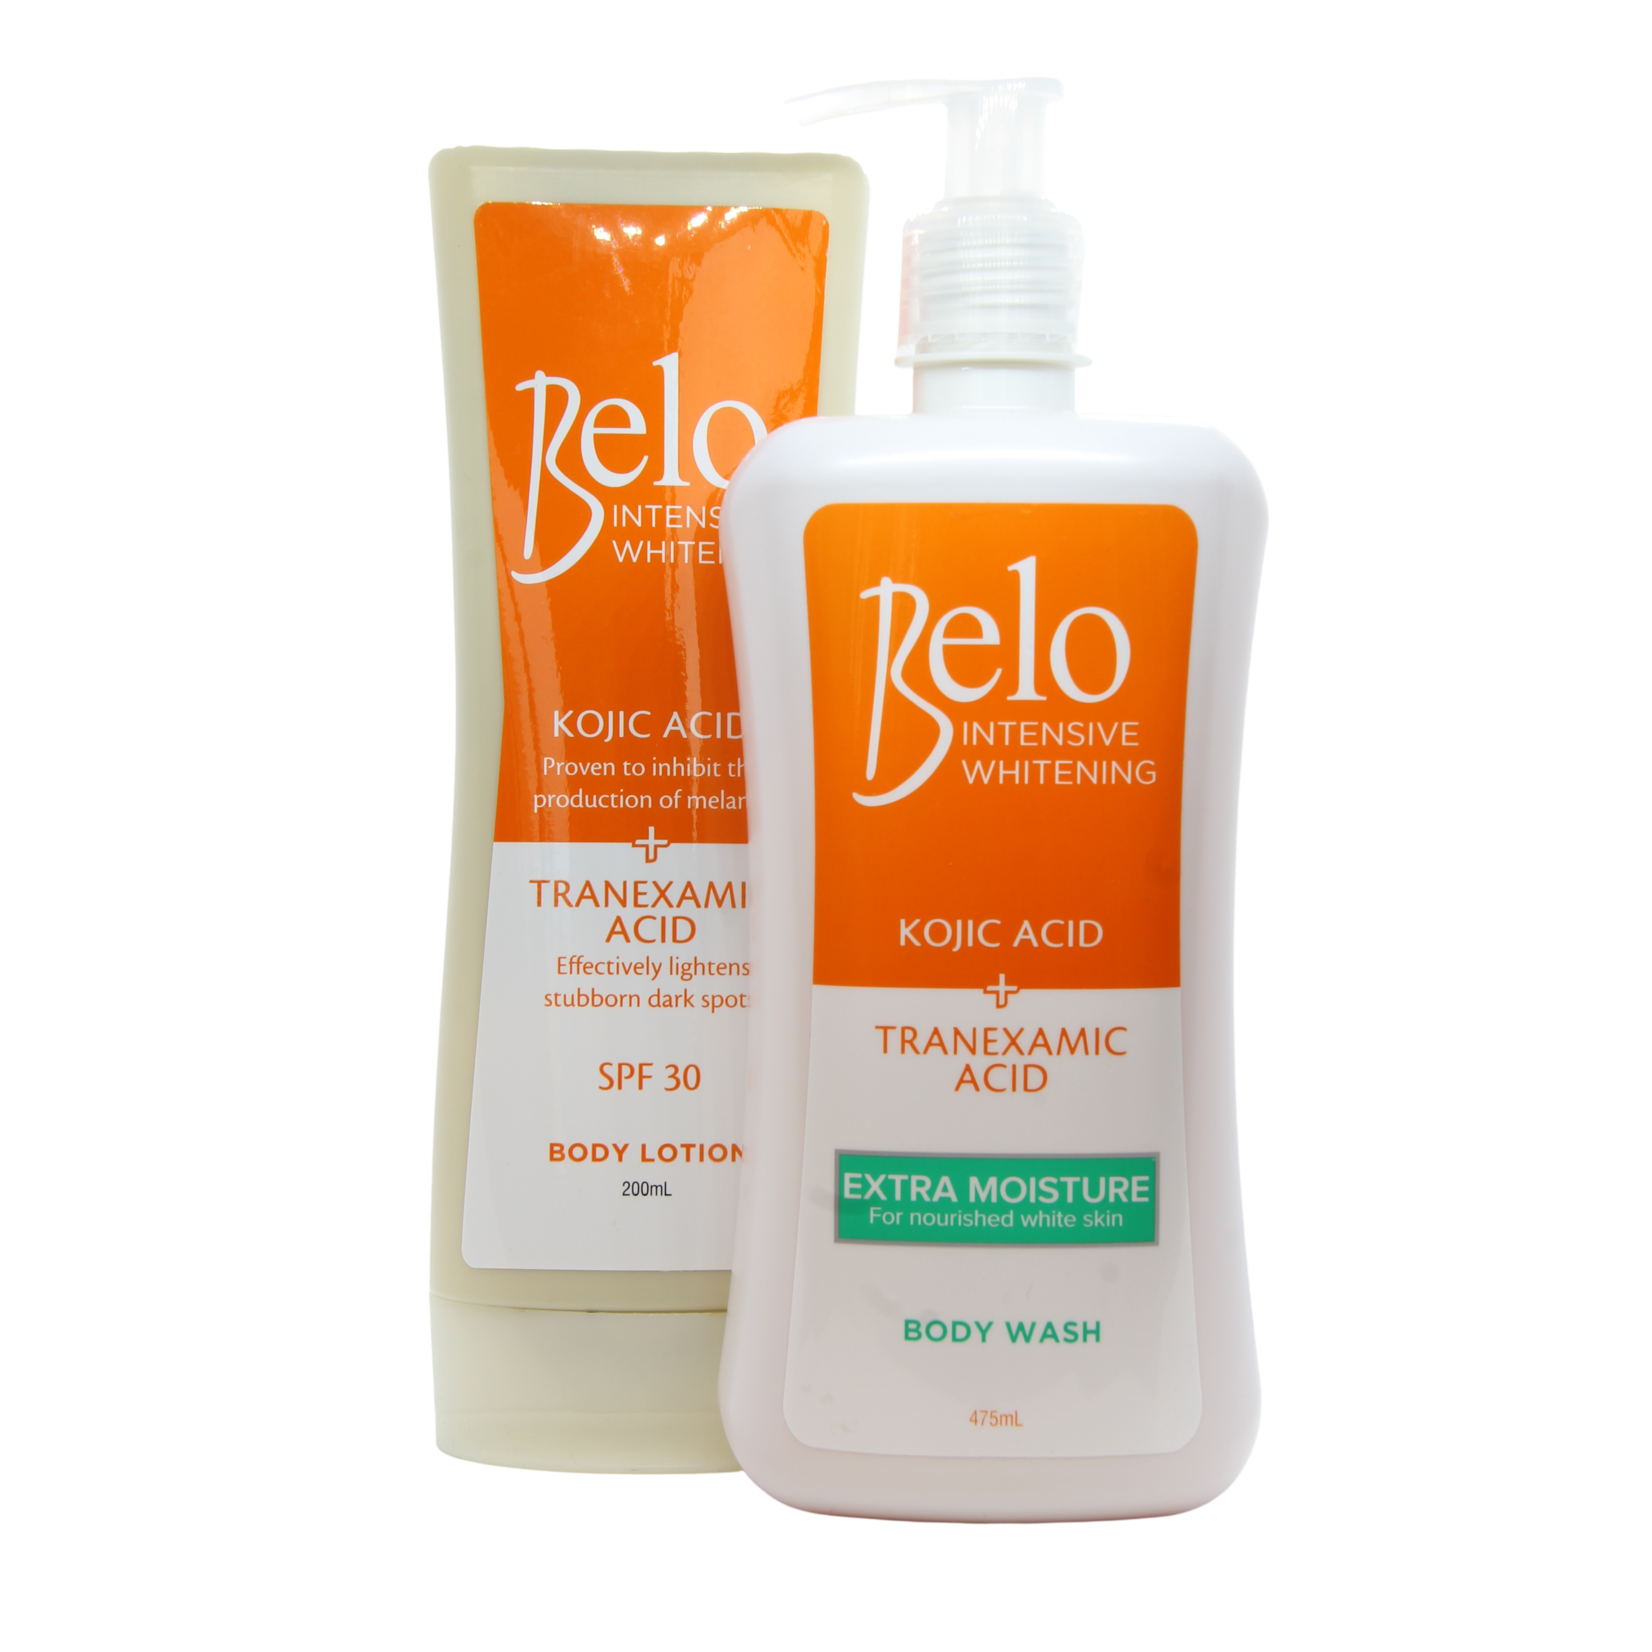 Belo, Vakkundig samengesteld om jouw unieke schoonheid te laten zien! Belo Intens skin lightening body lotion en body wash